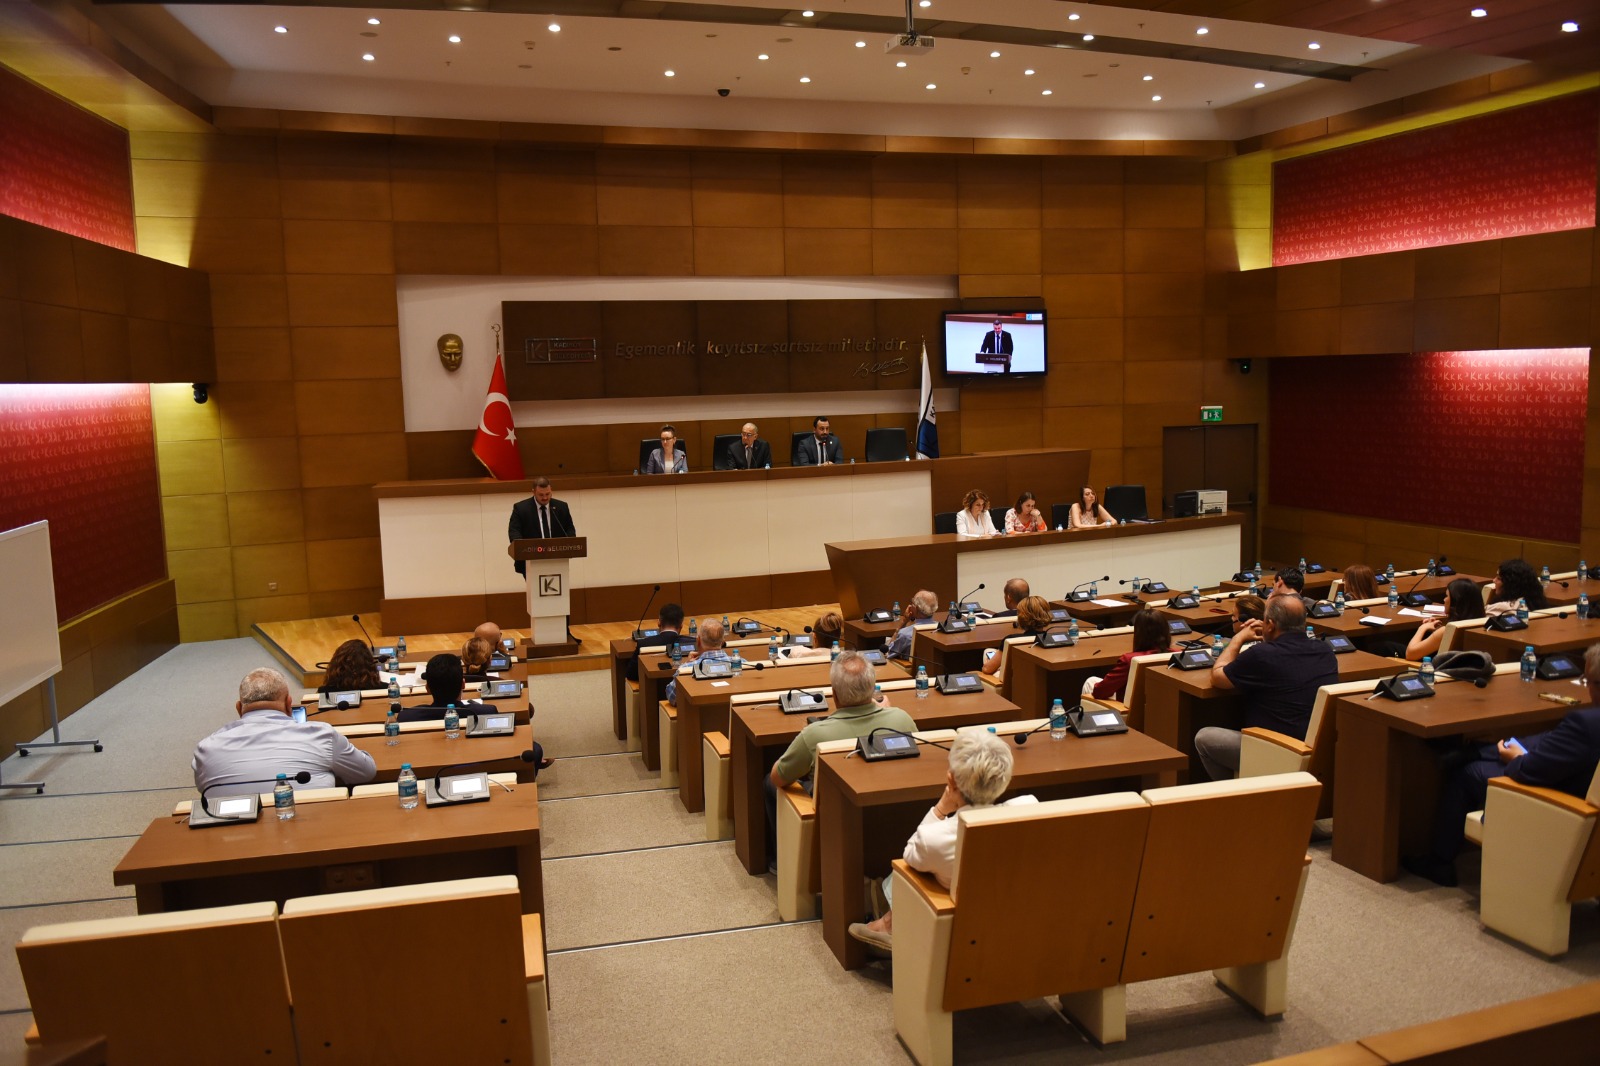 Kadıköy Belediyesi, İsrail’in Petah-Tikva şehri ile kardeş şehir protokolünü sonlandırdı